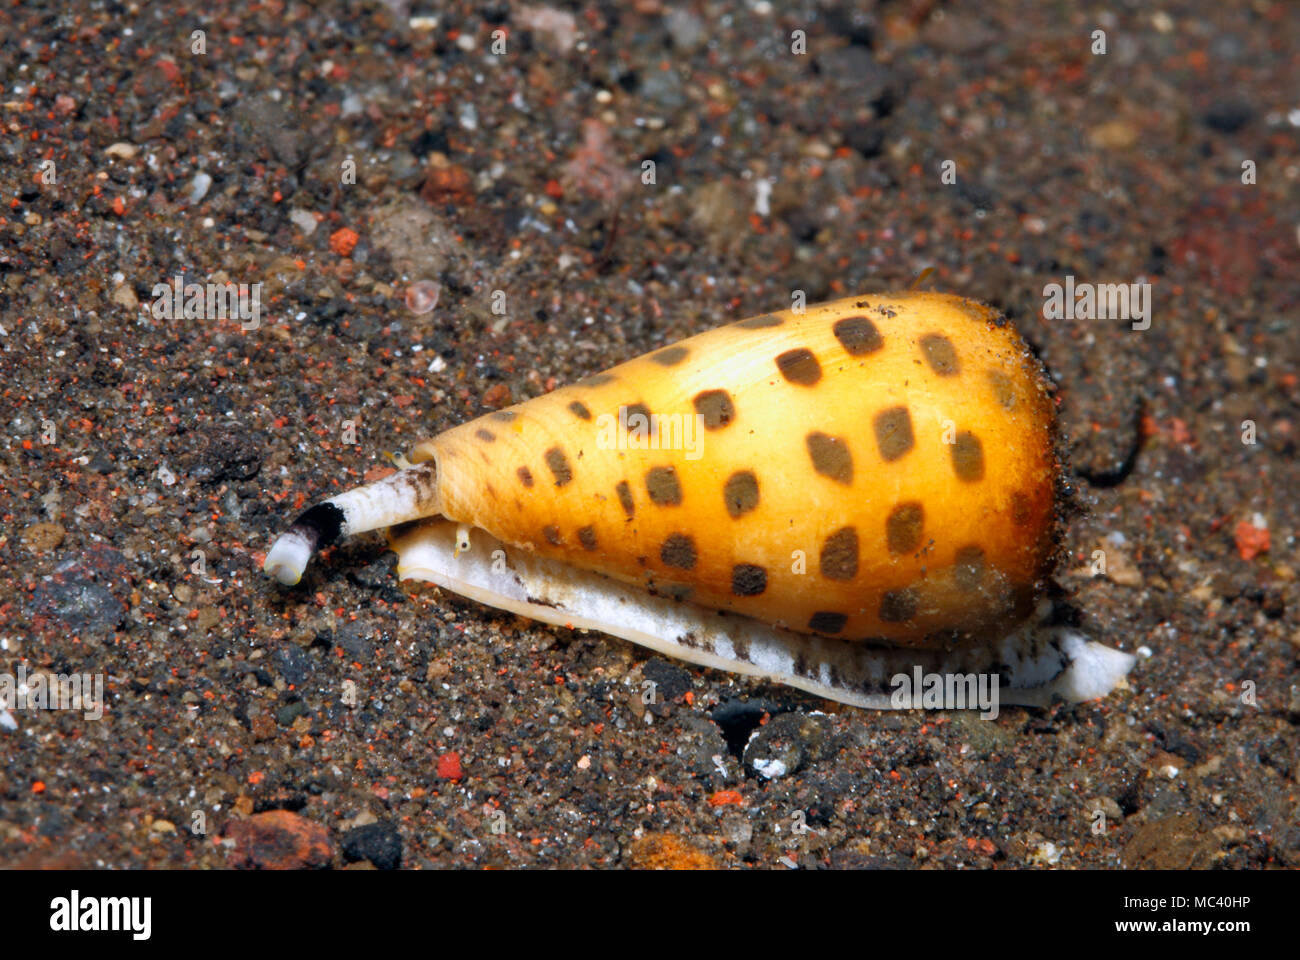 Cône d'Ivoire Shell, Conus eburneus, rampant le long du sable. Cette espèce est venimeux. Tulamben, Bali, Indonésie. La mer de Bali, de l'Océan Indien Banque D'Images